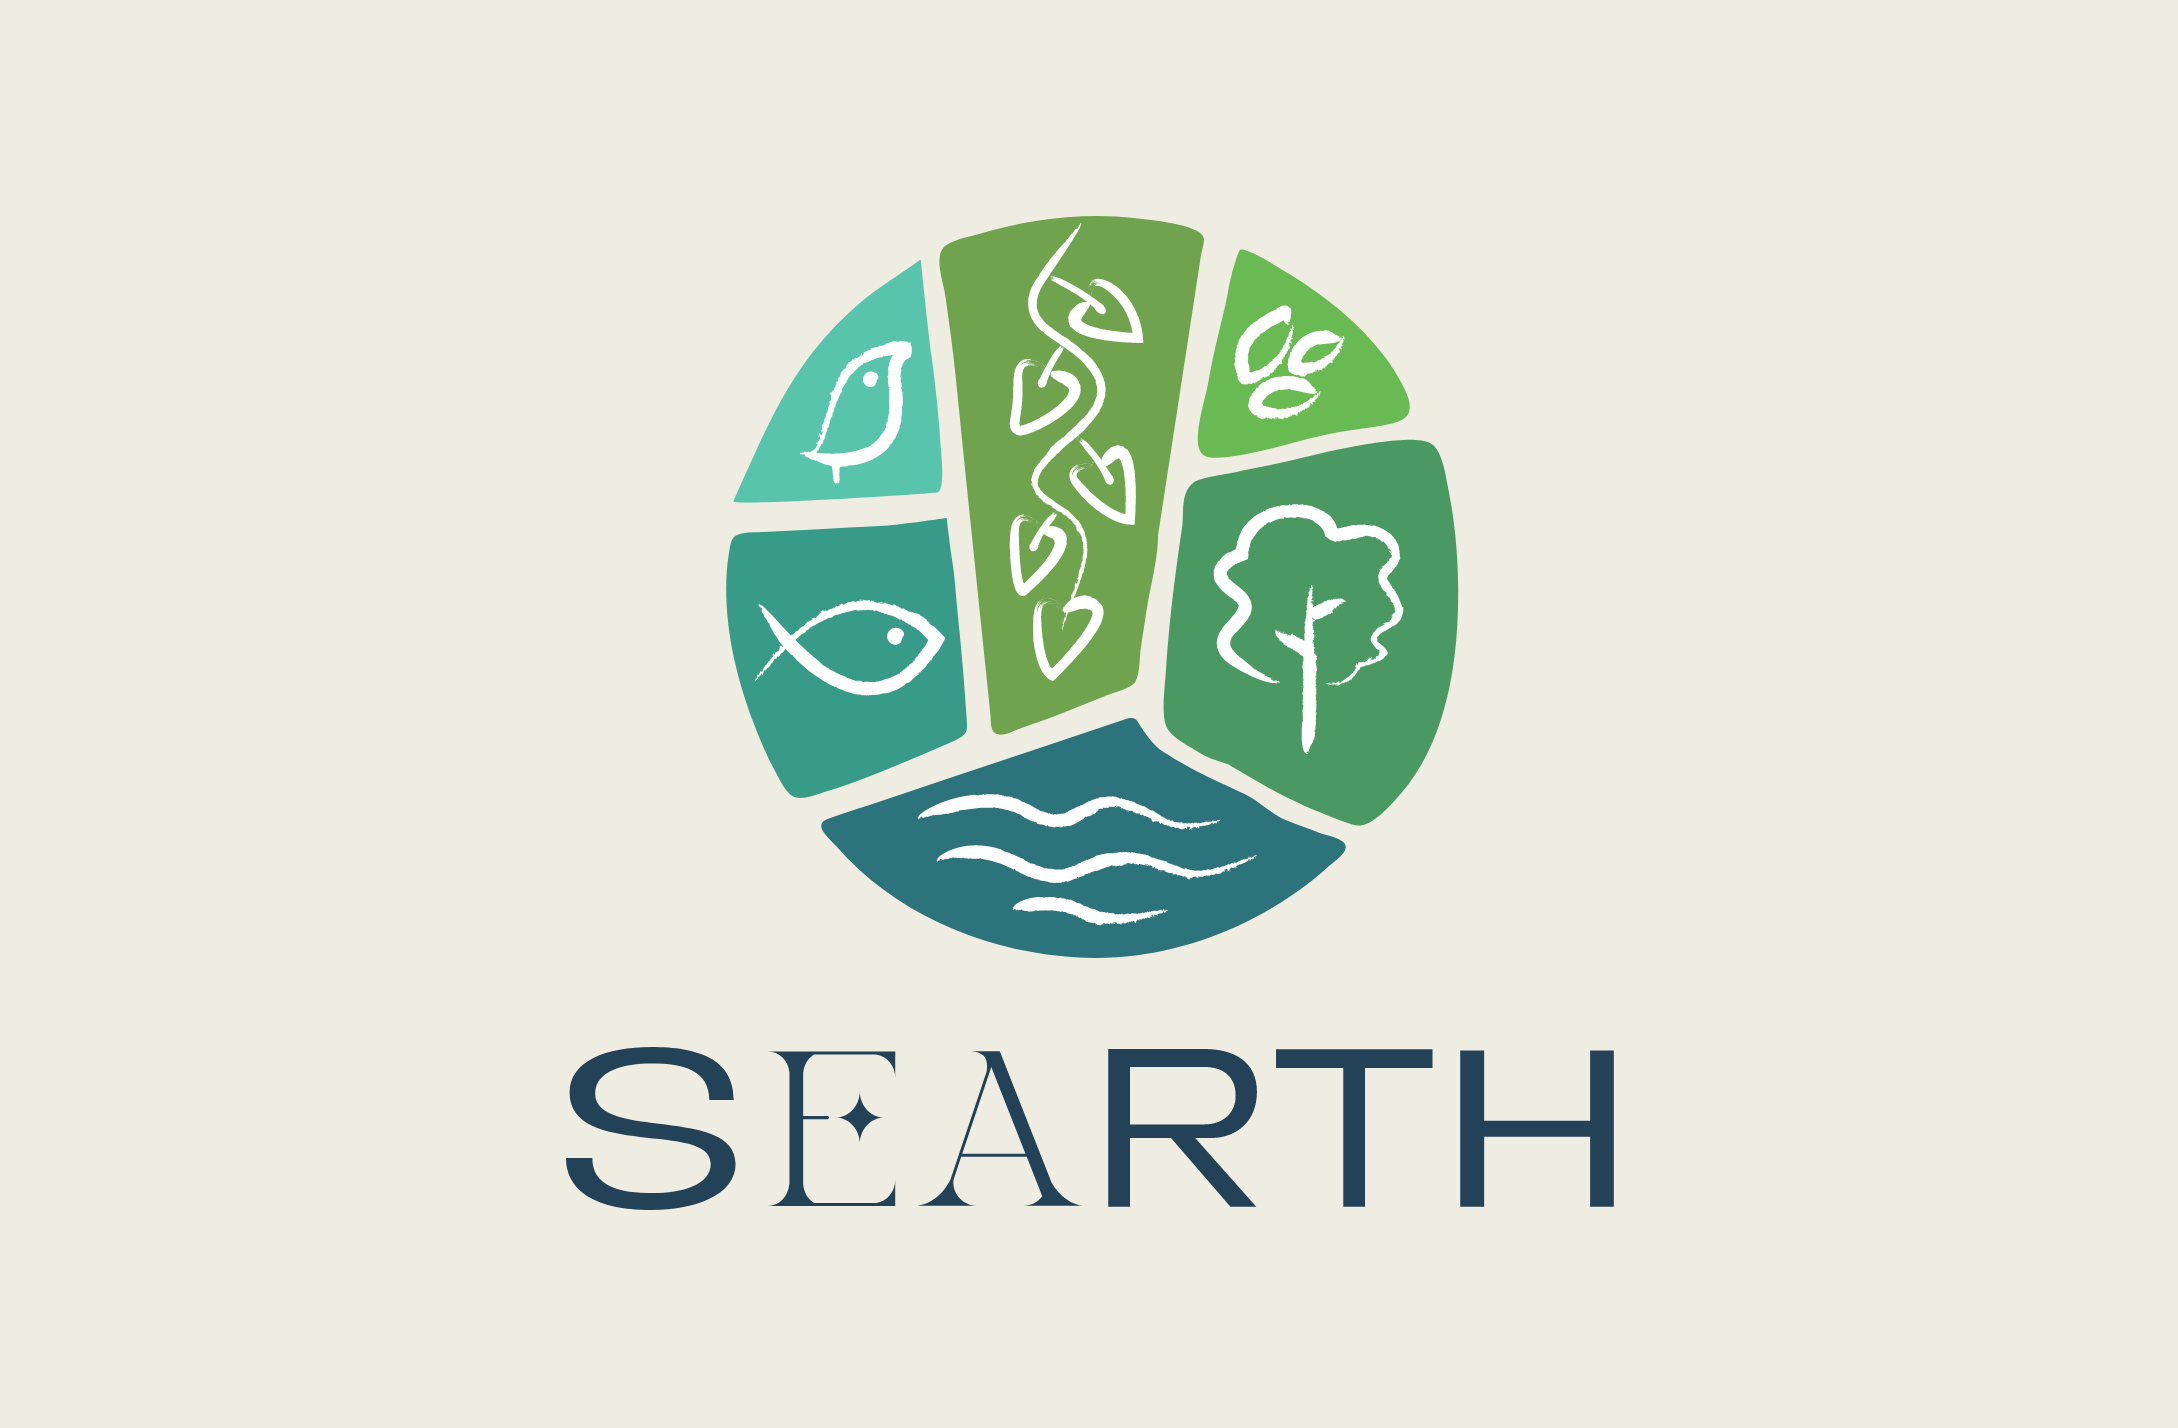 Searth